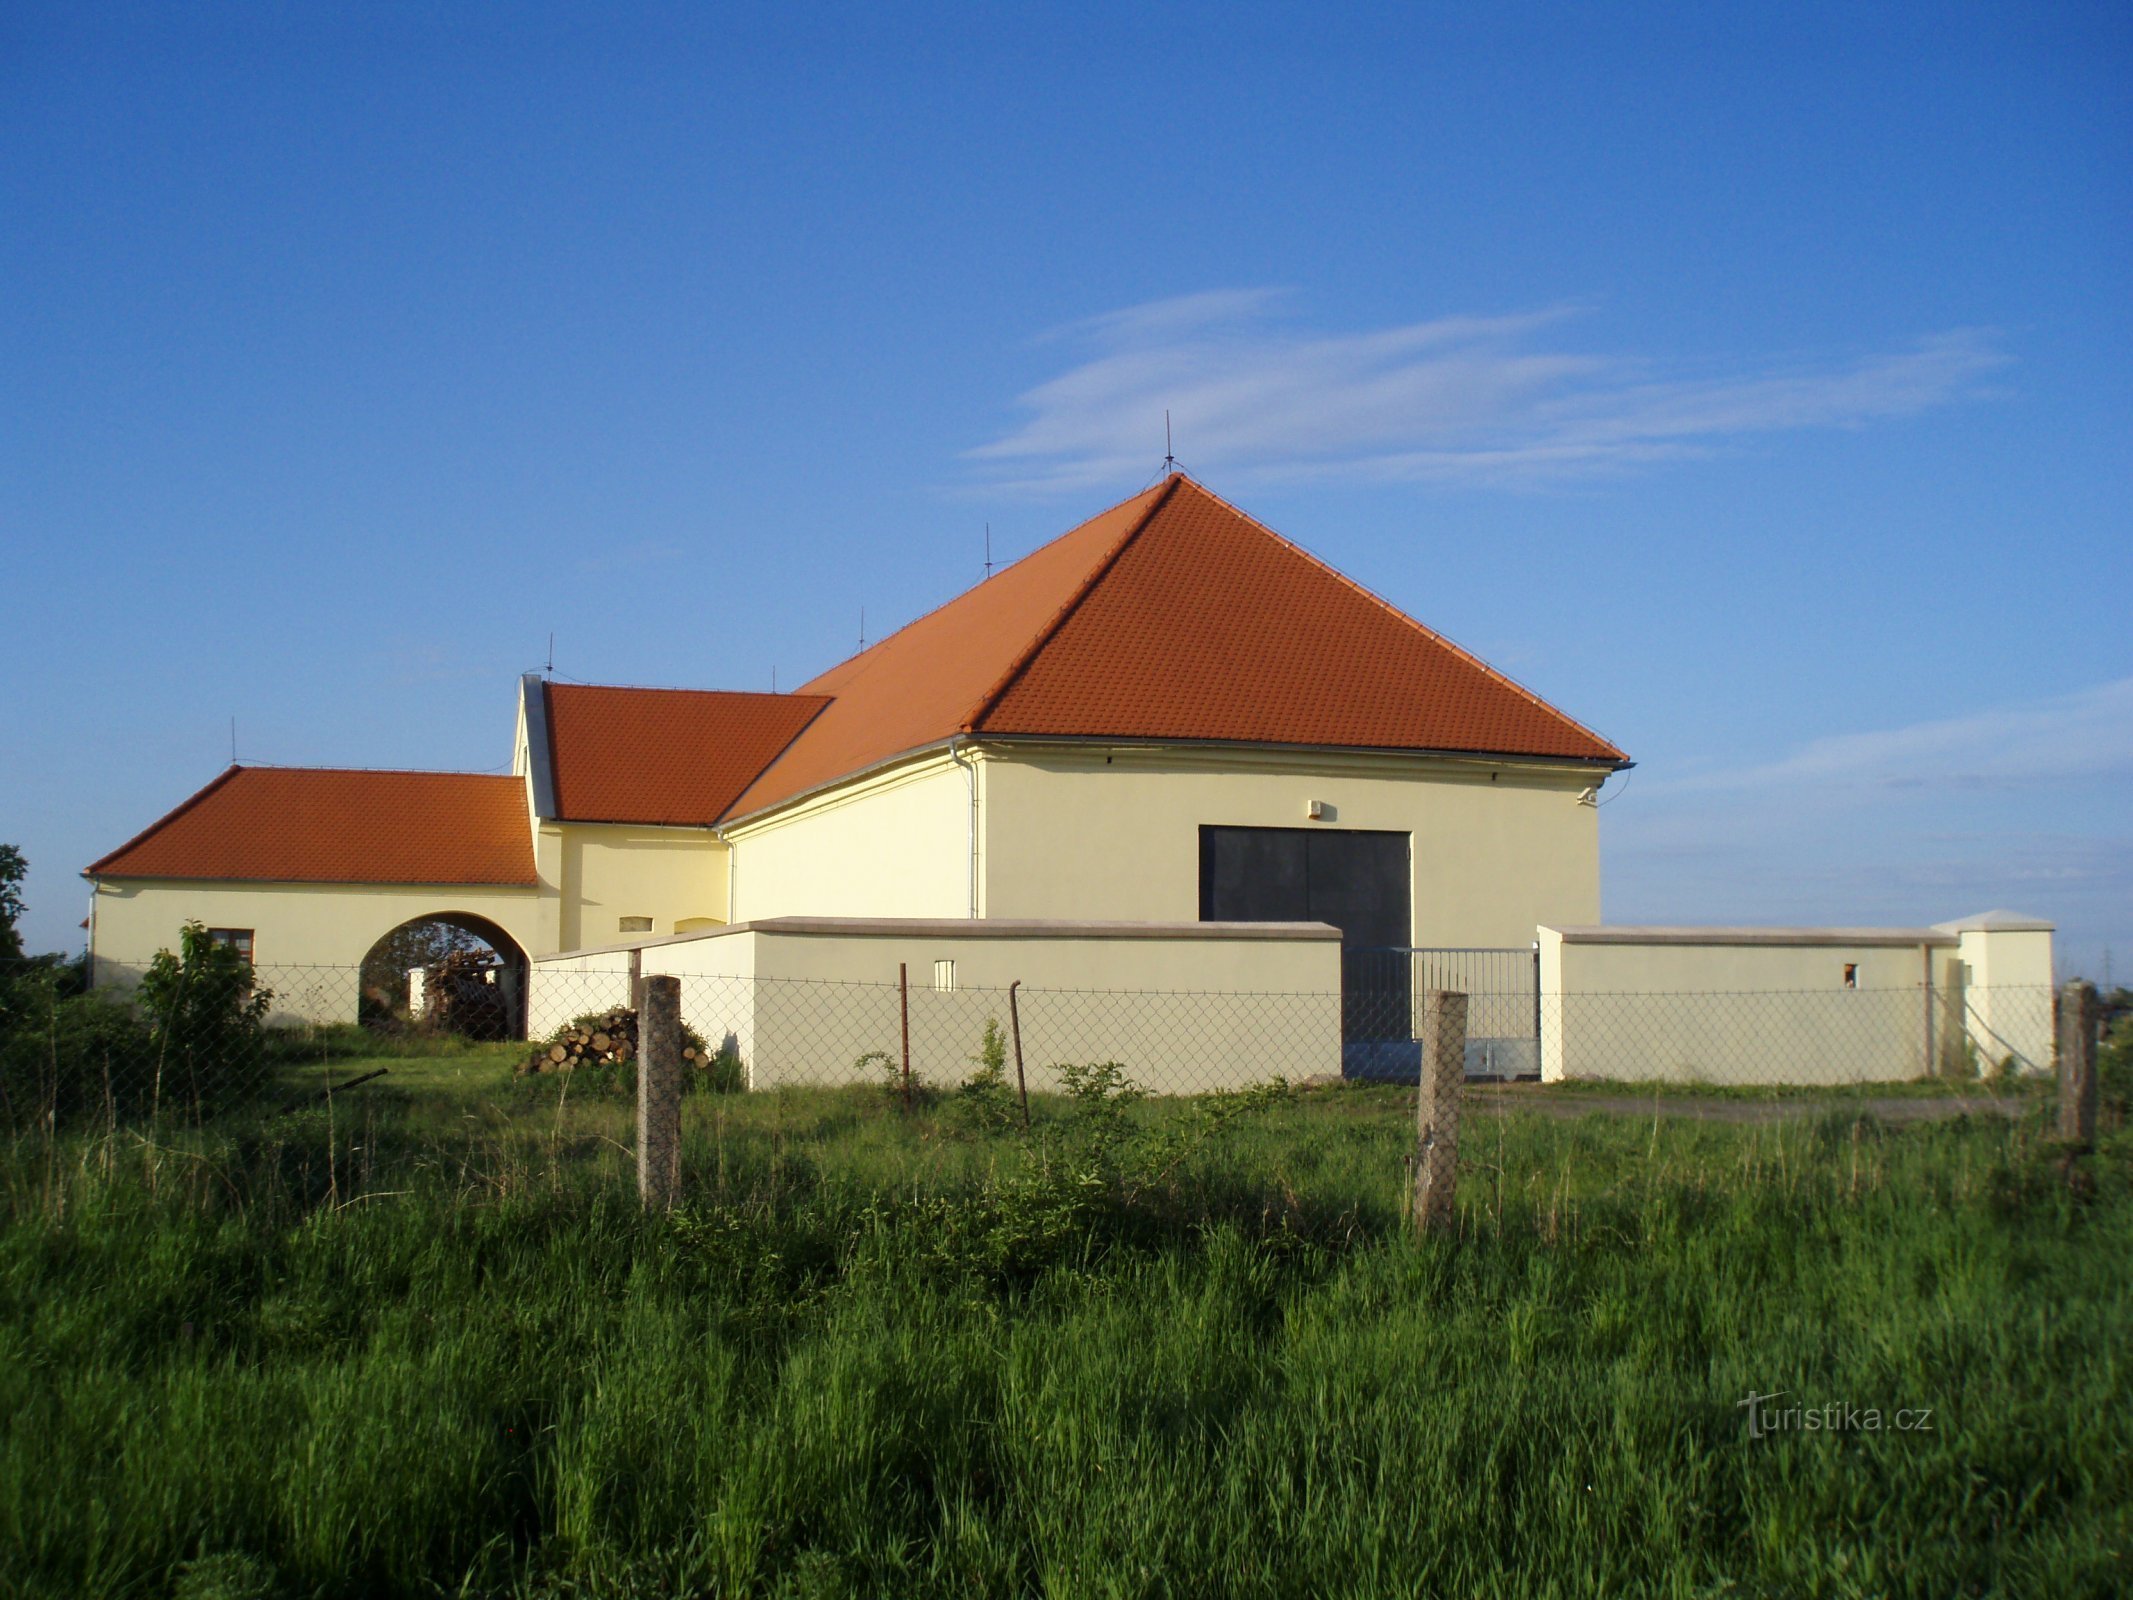 Fabryka proszków pod Kuklenem (Hradec Králové, 8.5.2011)